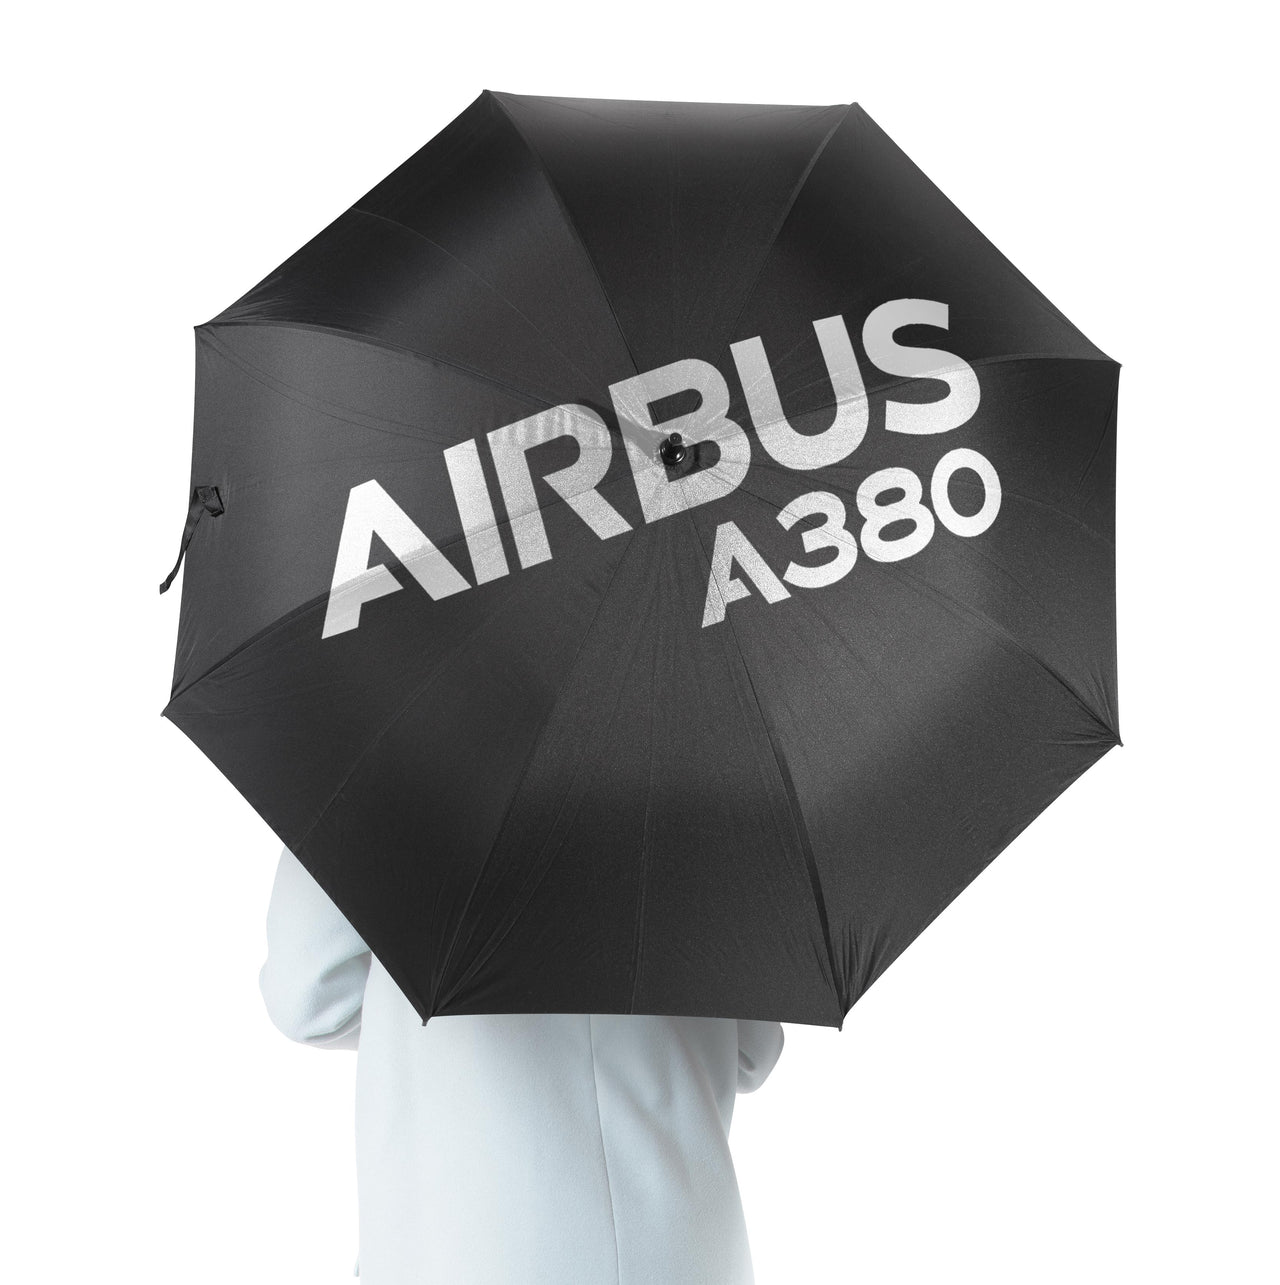 Airbus A380 & Text Designed Umbrella